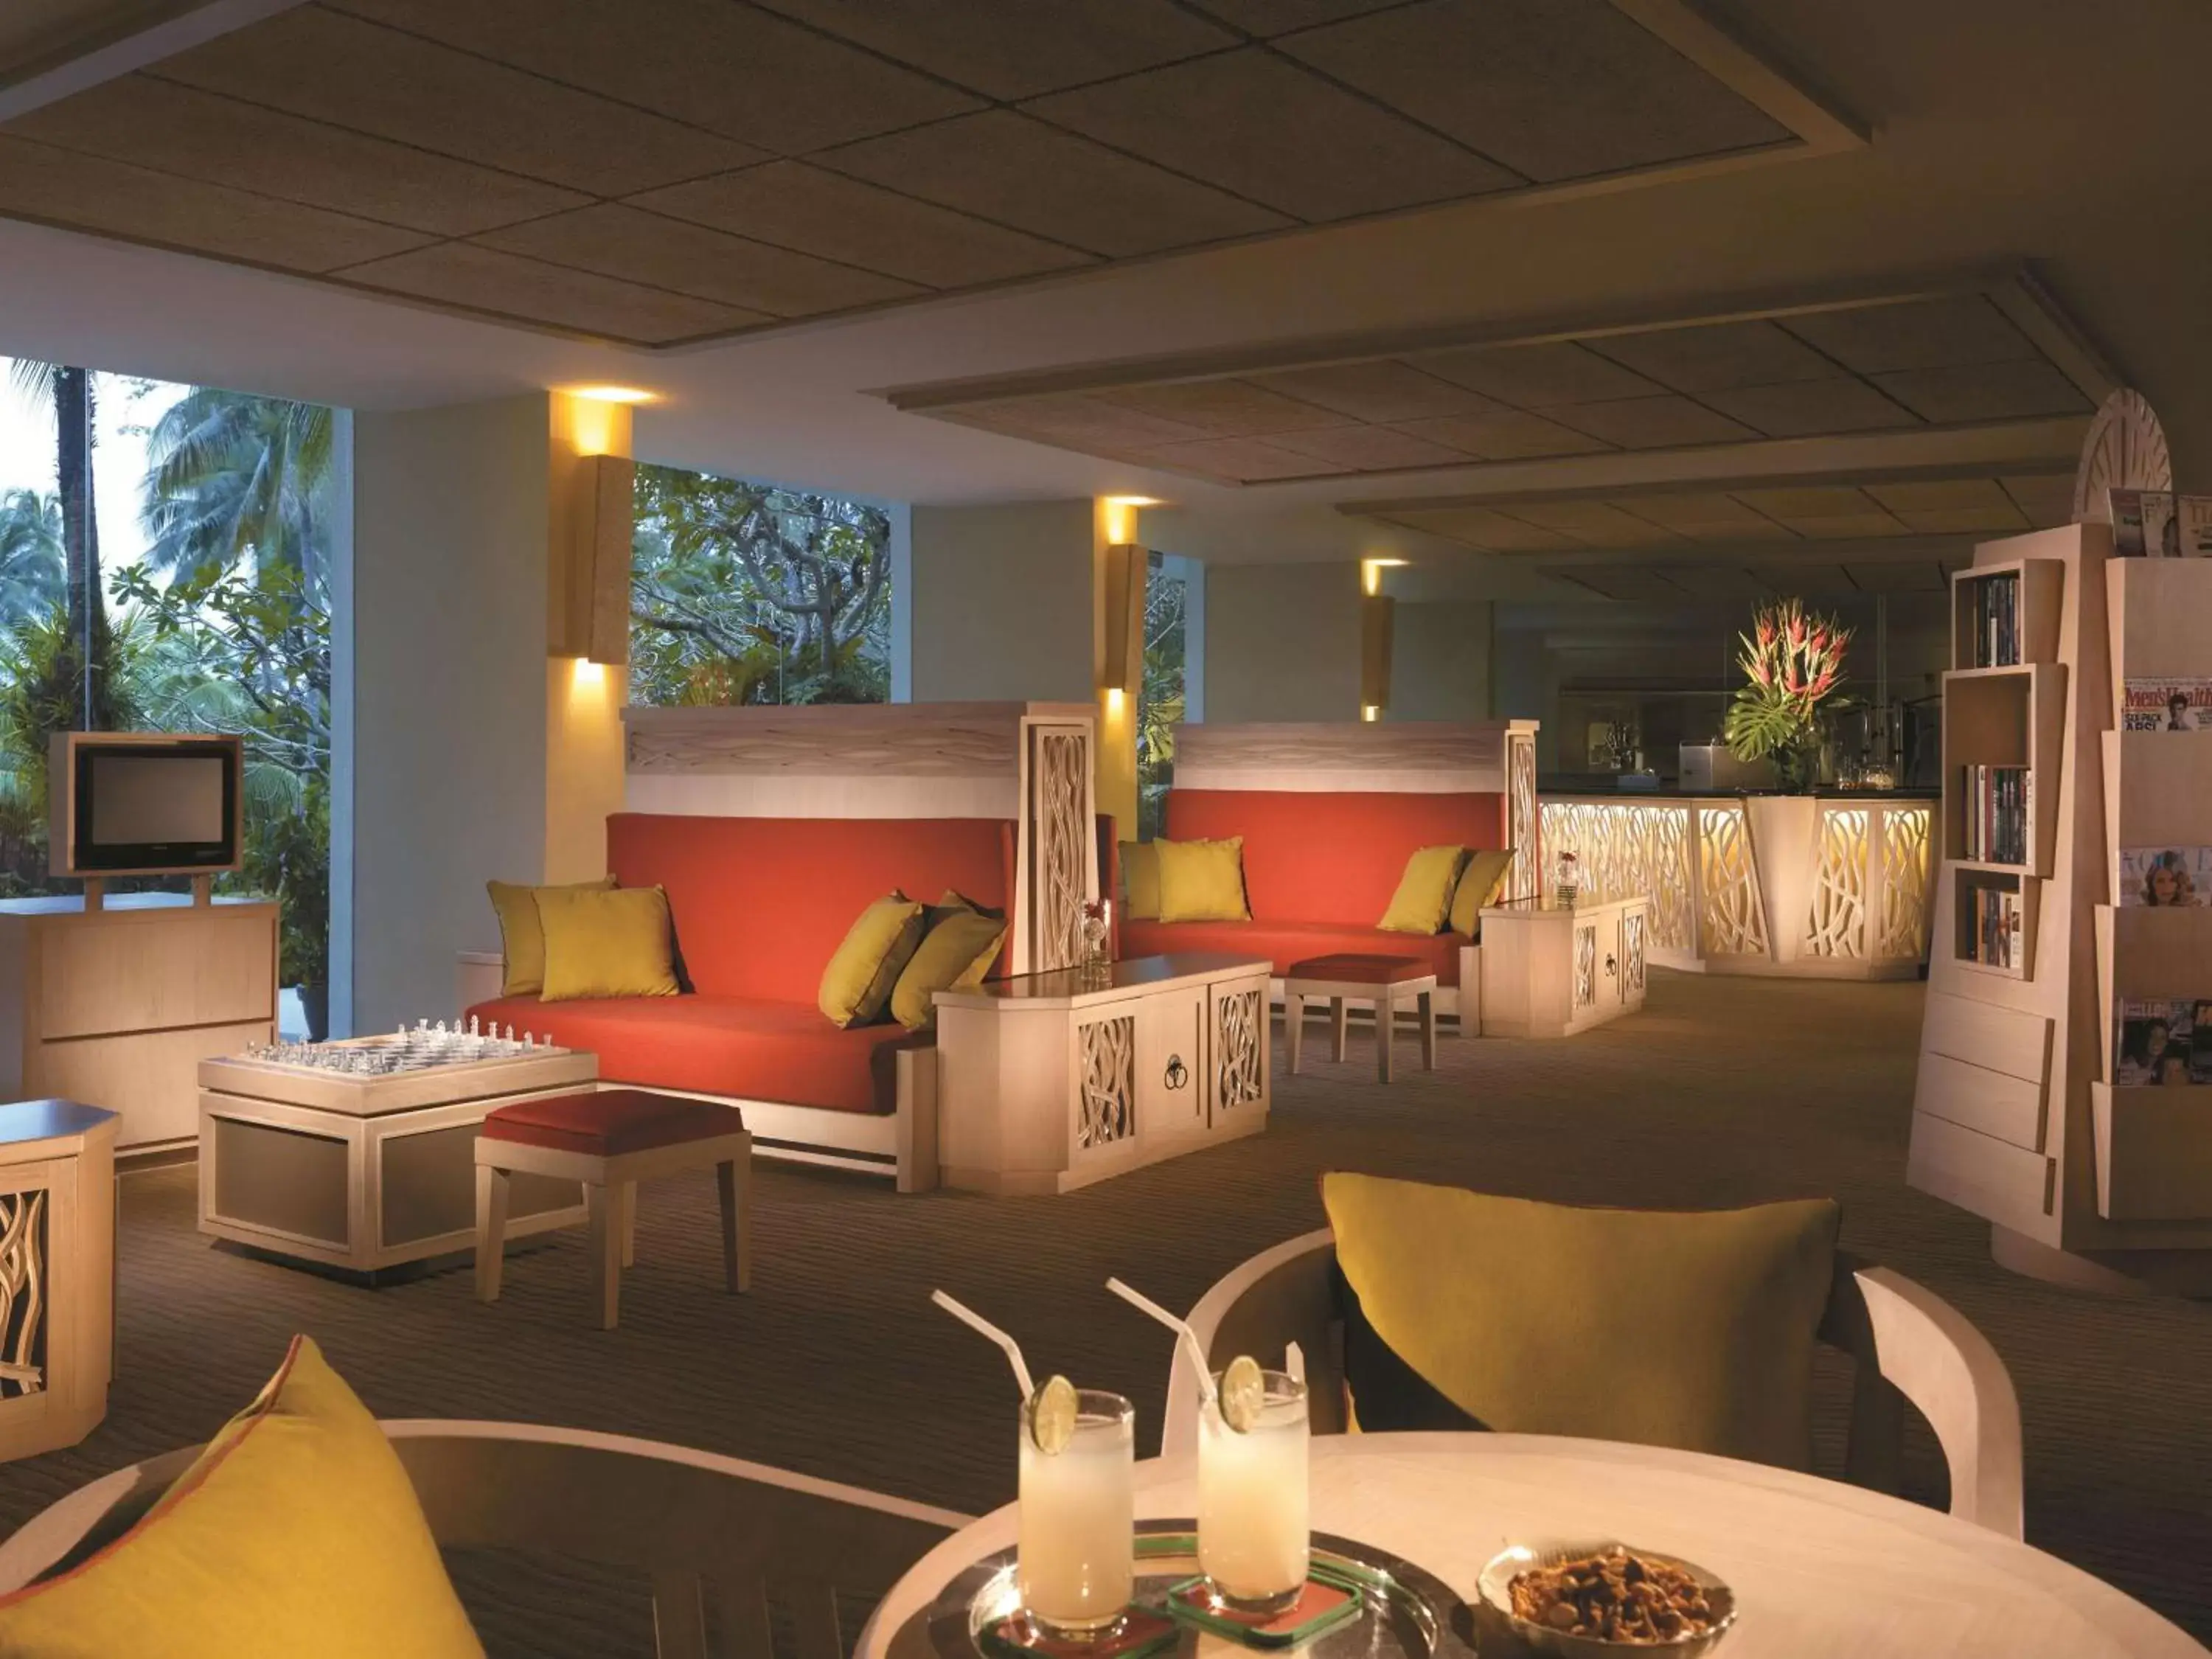 Lounge or bar, Restaurant/Places to Eat in Shangri-La Golden Sands, Penang